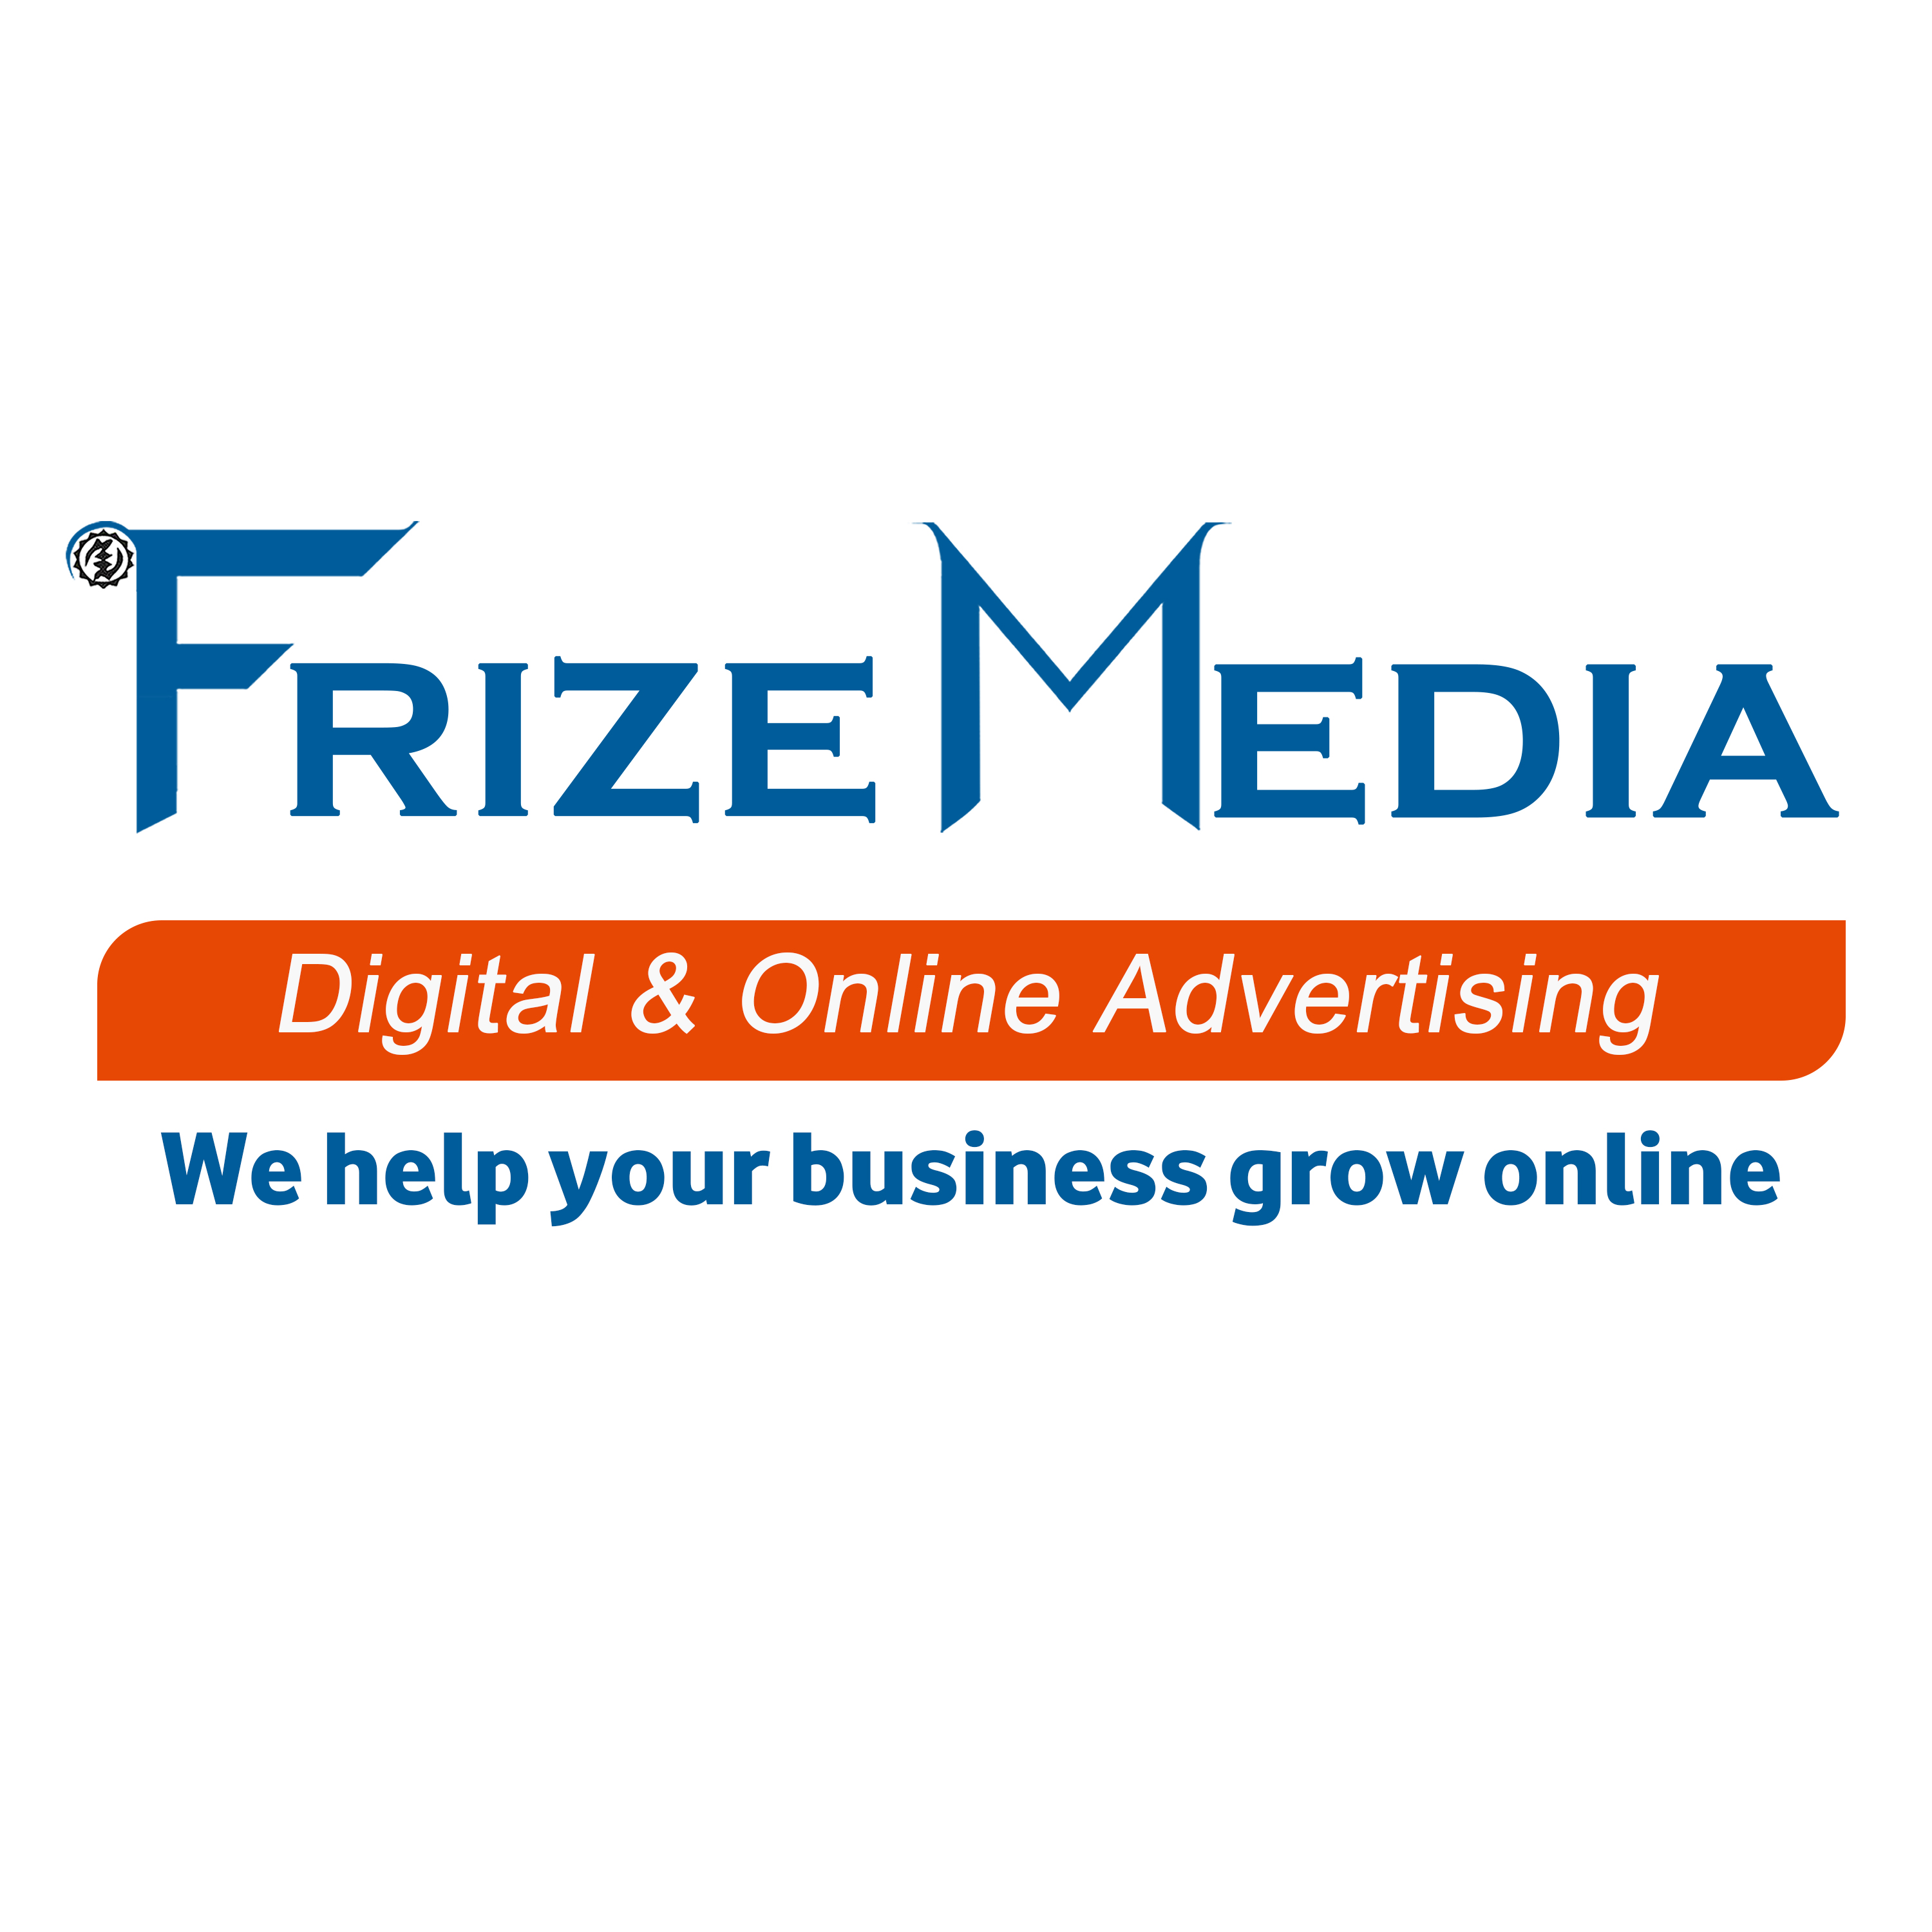 FrizeMedia Advertising